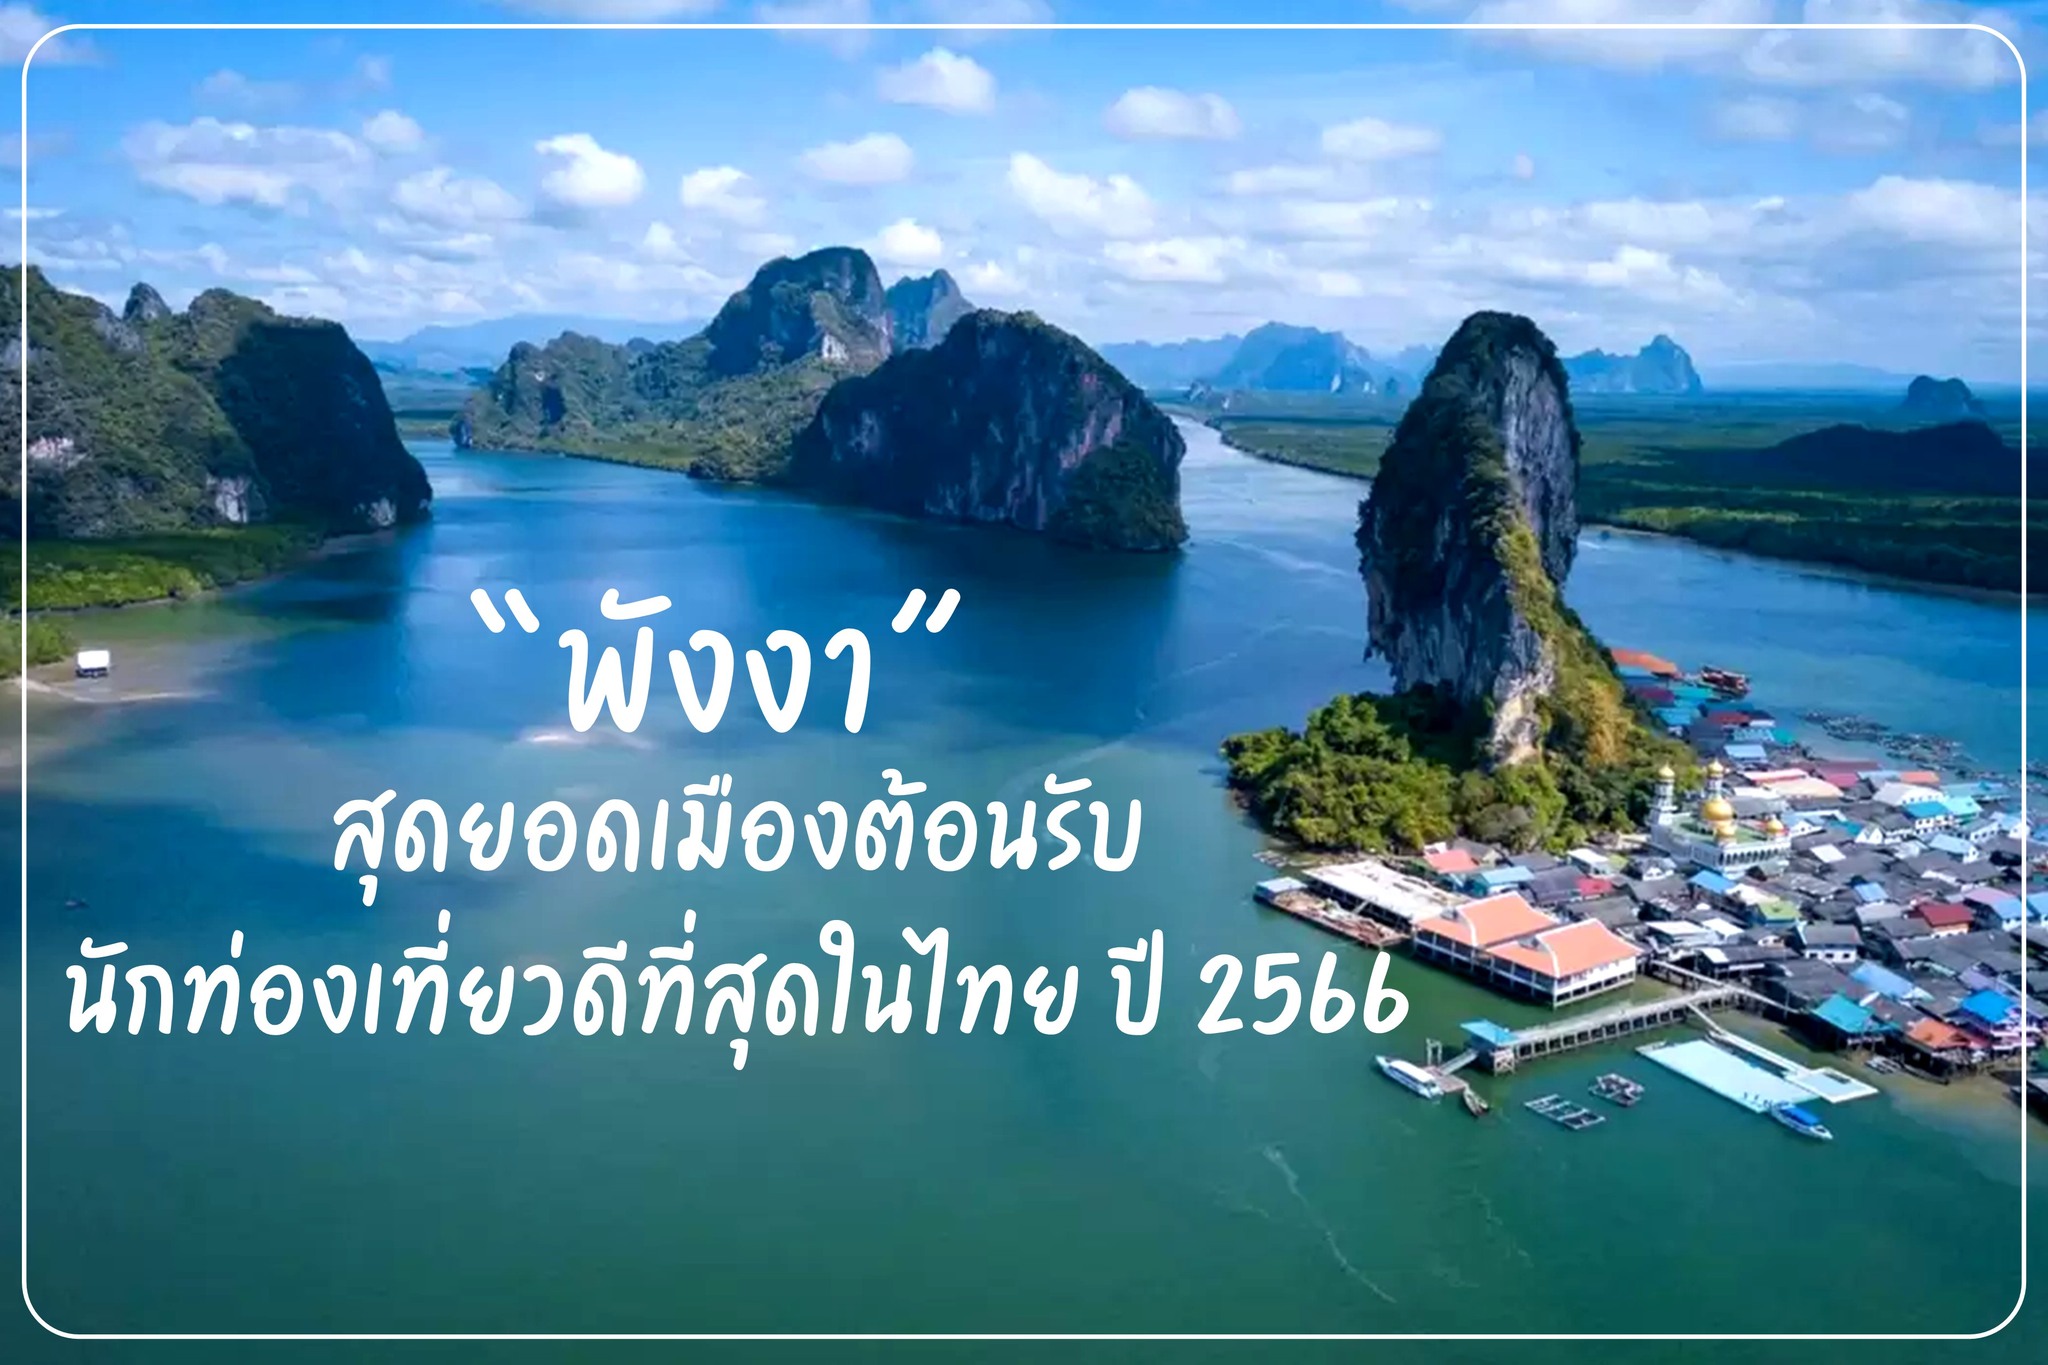 สุดยอดเมืองต้อนรับนักท่องเที่ยวดีที่สุดในไทย ปี 2566